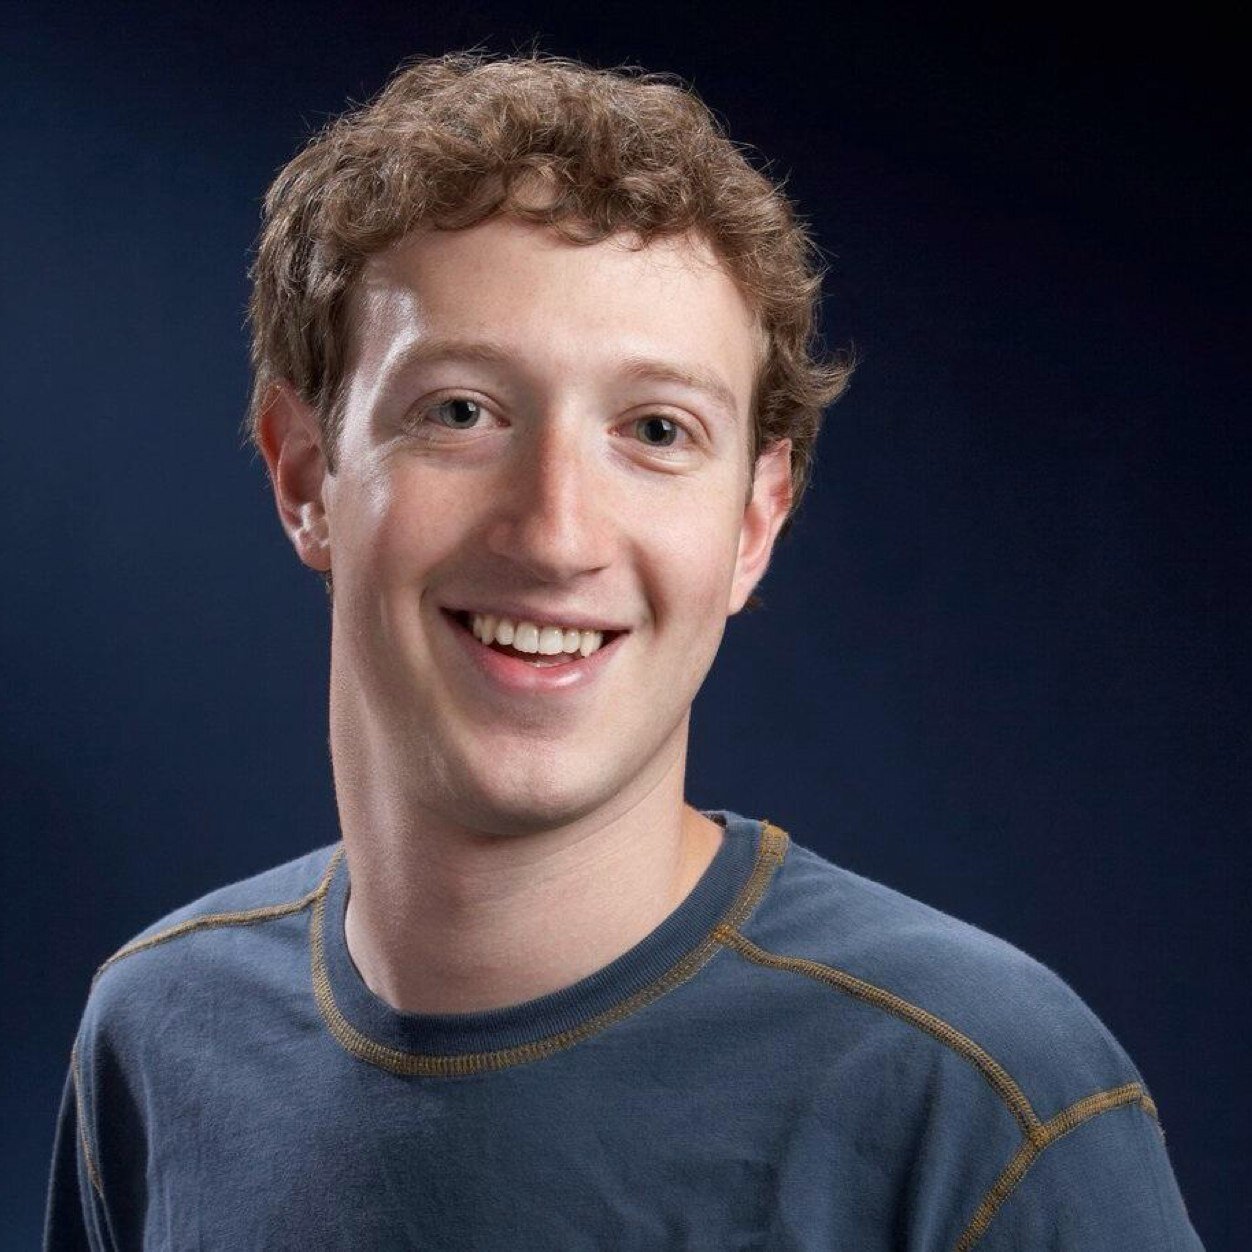 Mark Zuckerberg, founder & CEO di Facebook. Mi siedo dalla parte della ragione perchè è pieno di donne. Parody account. Attualità, satira e humor.